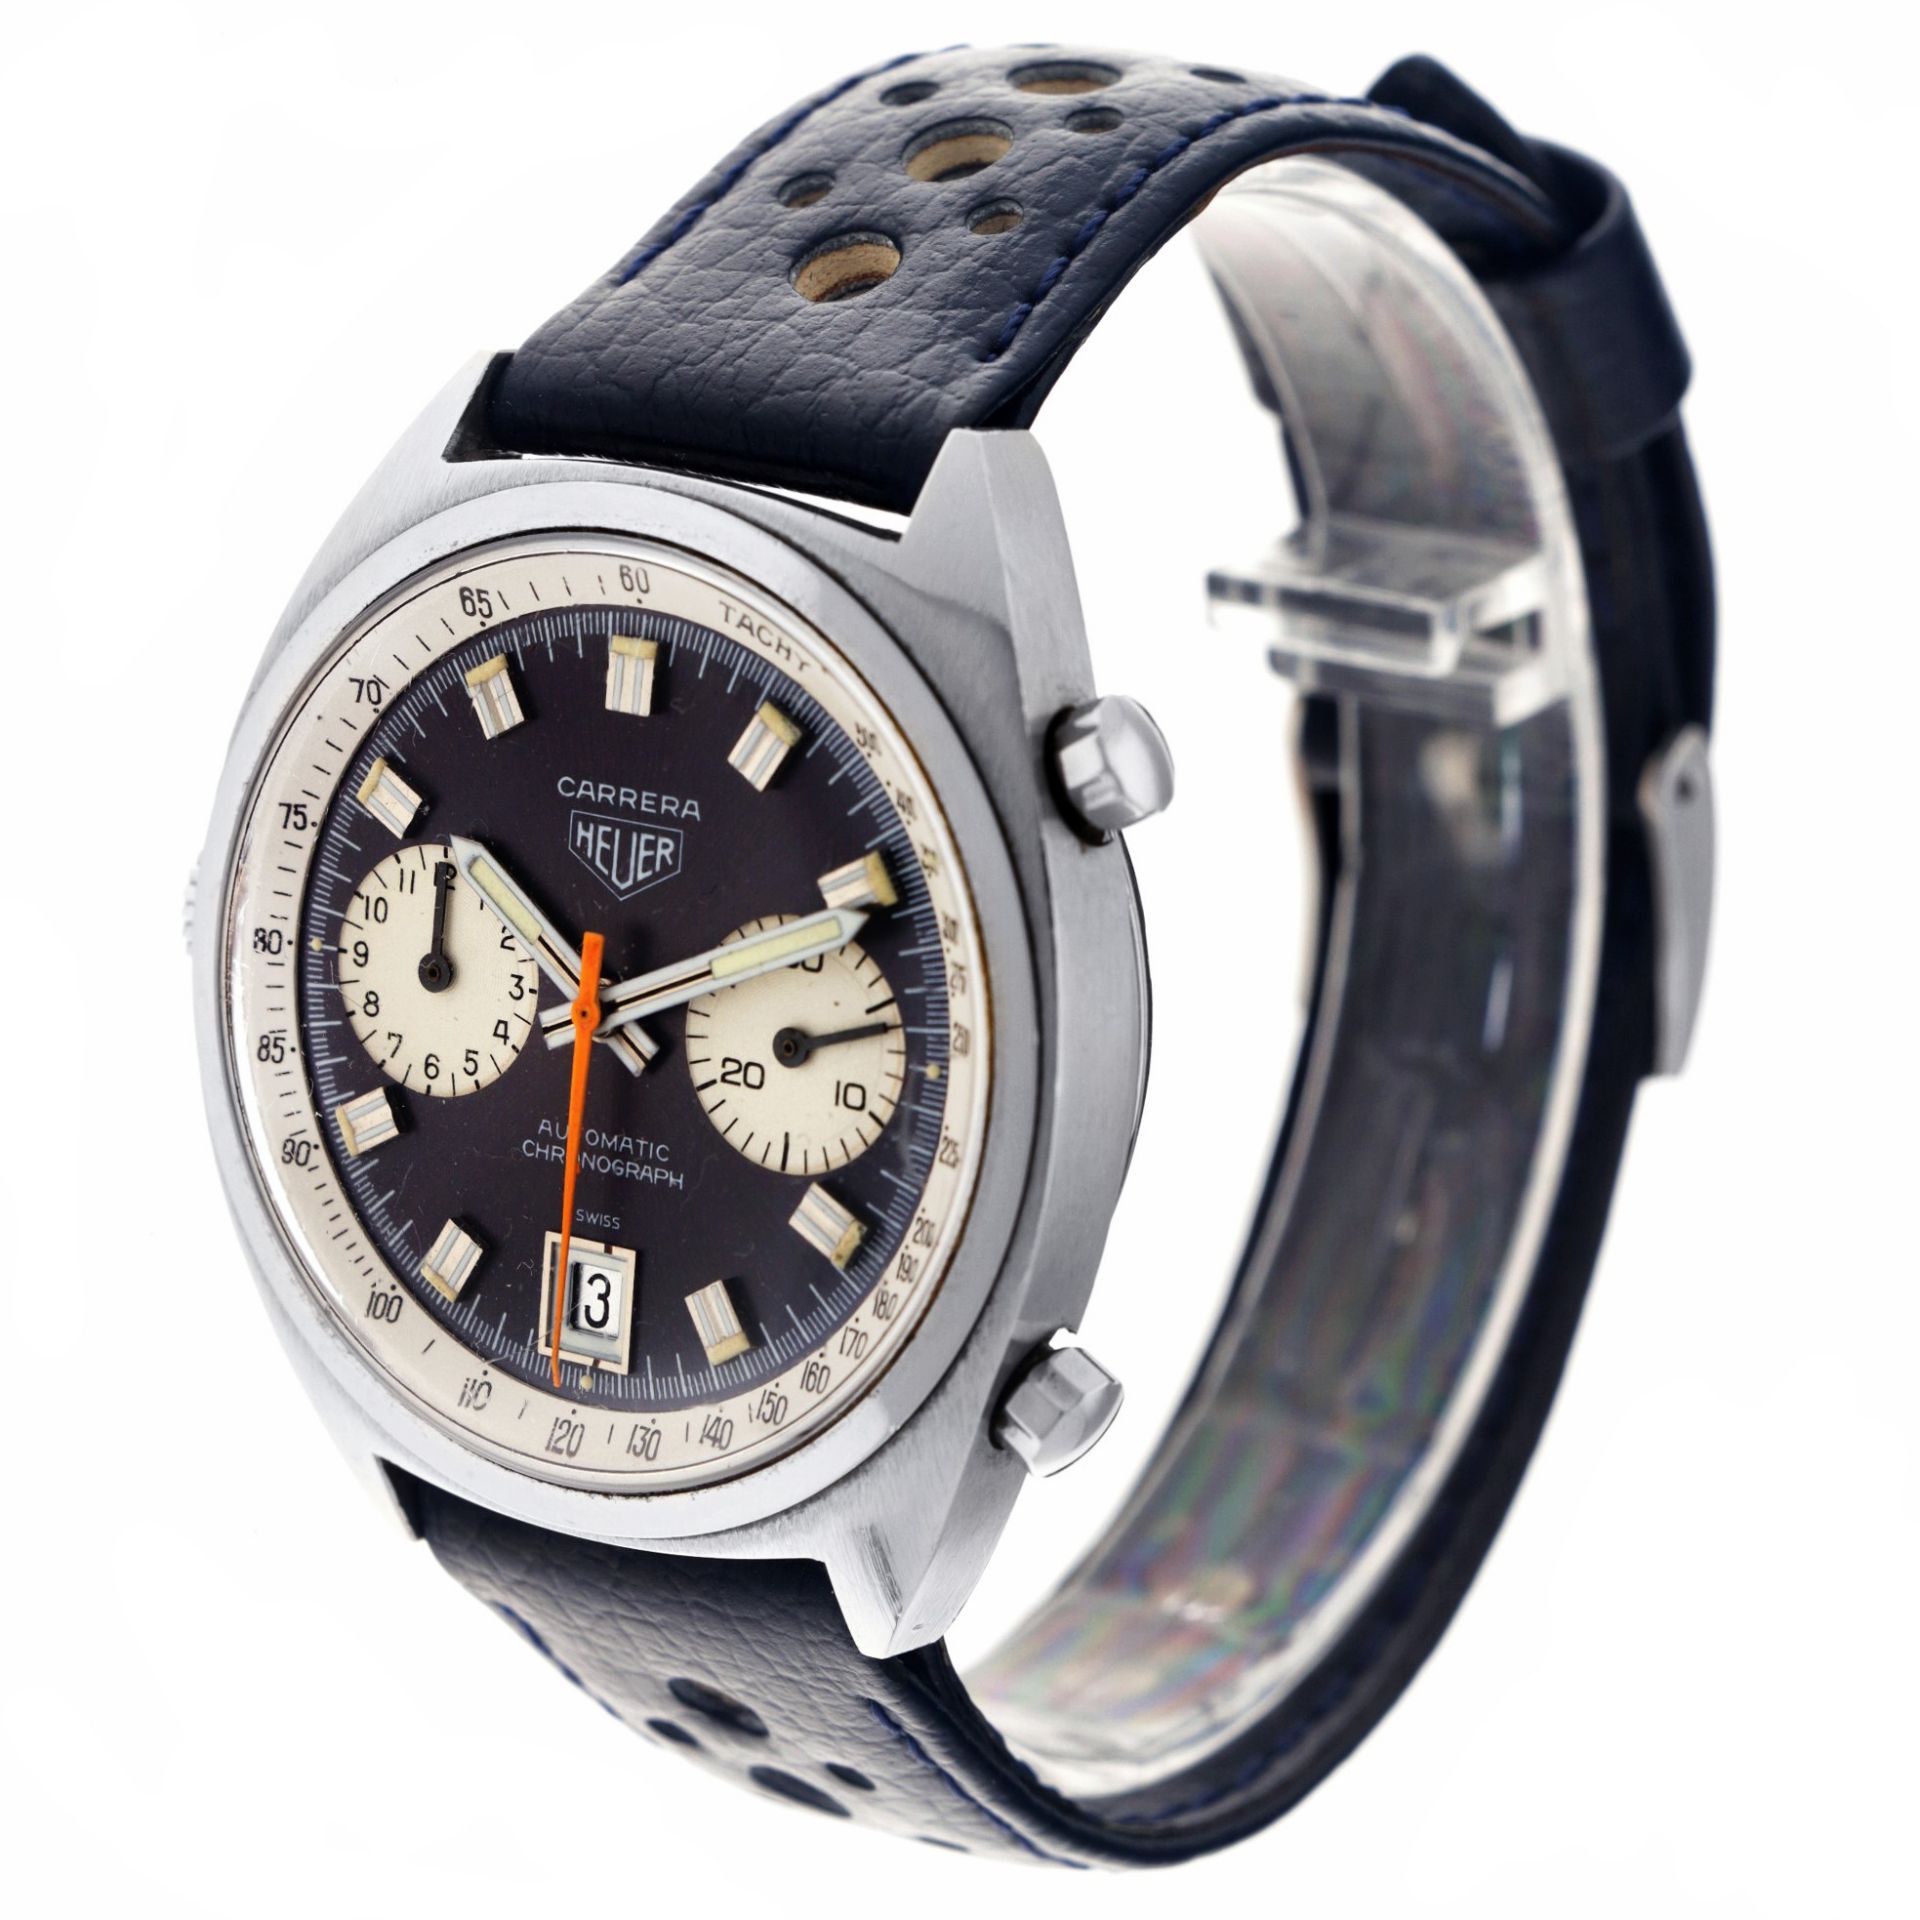 Heuer Carrera 1153 - Men's watch - approx. 1970. - Image 2 of 5